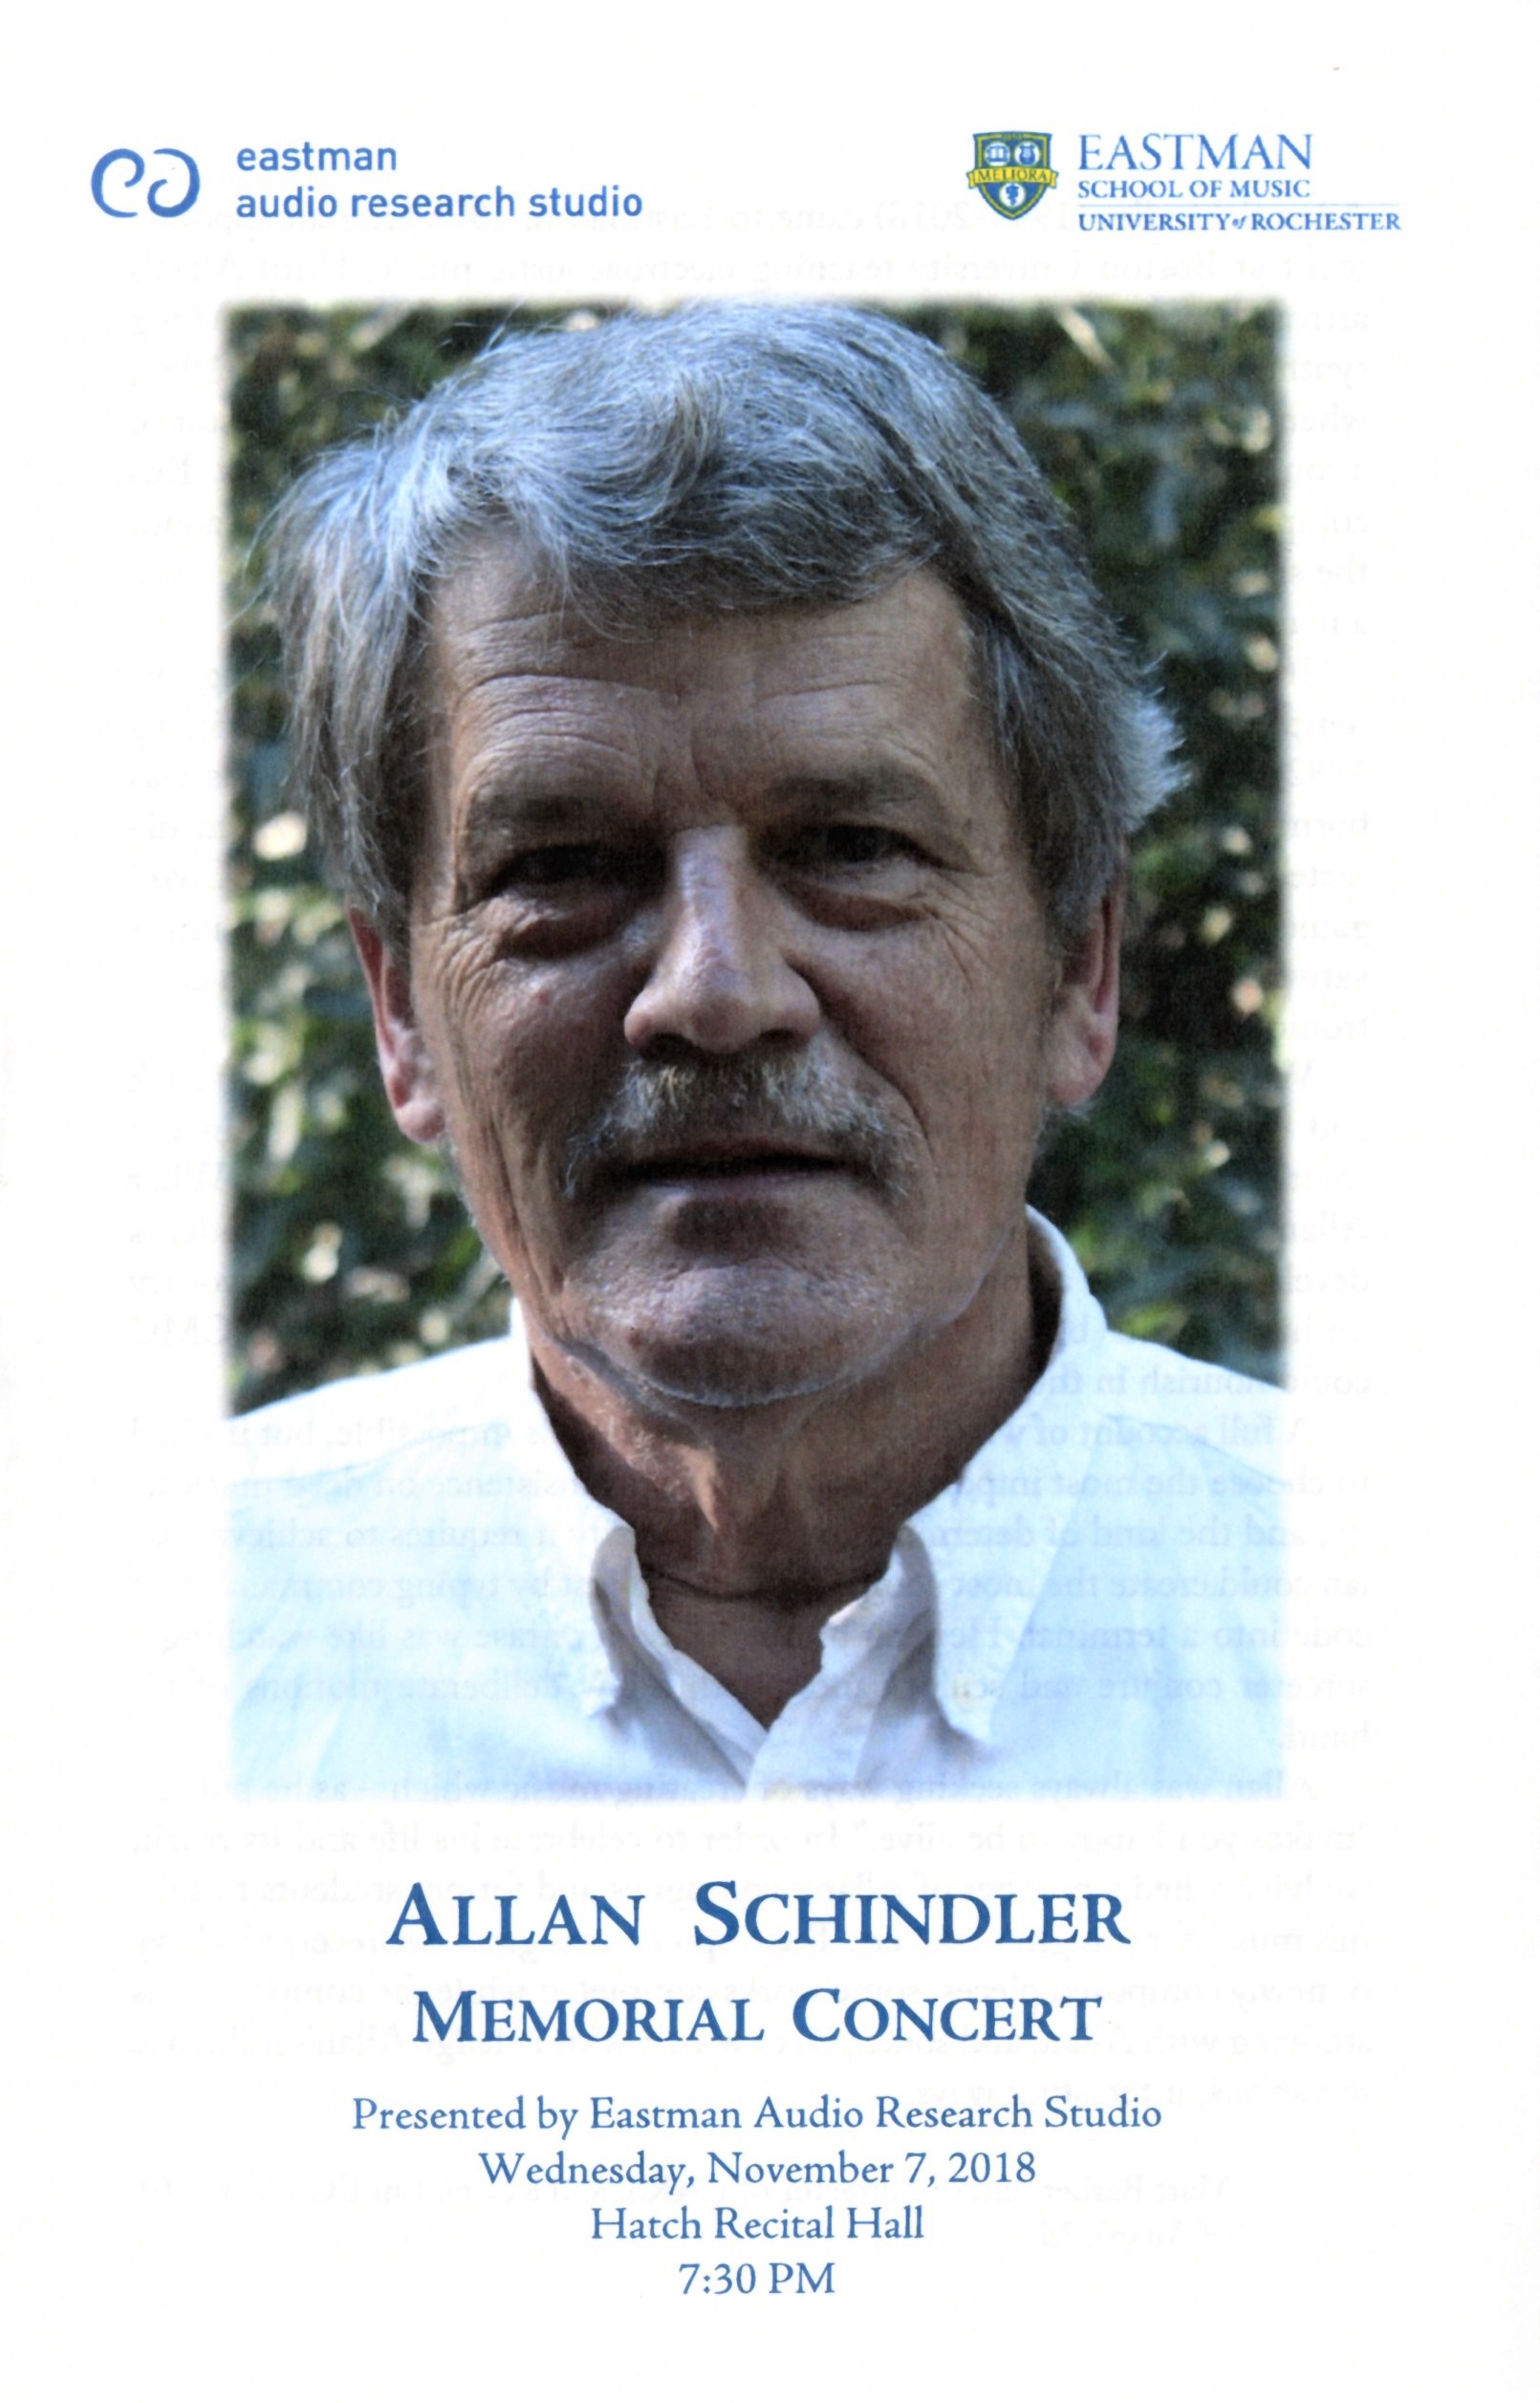 Allan Schindler memorial concert program